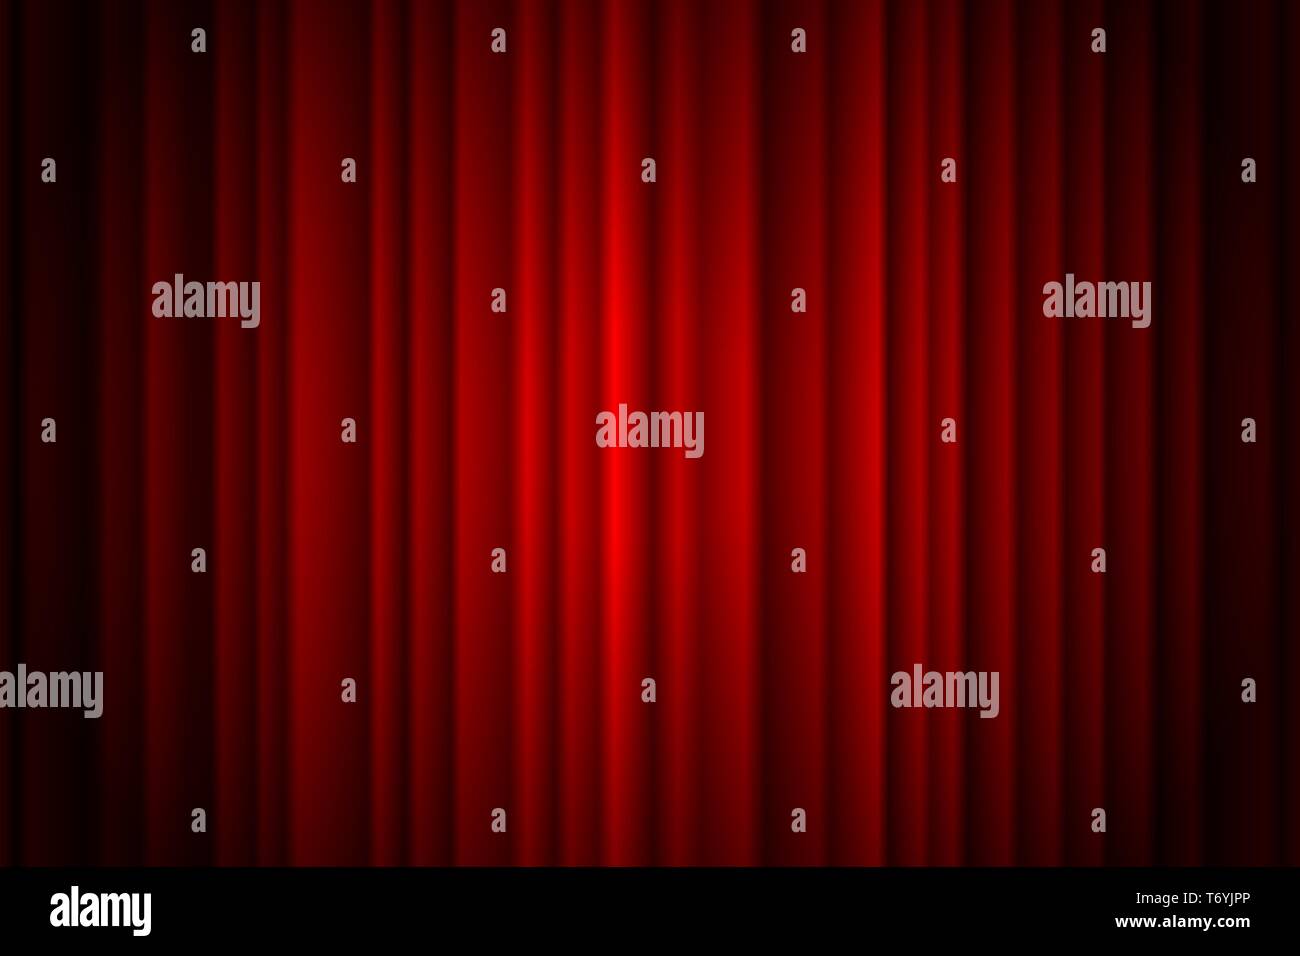 Geschlossenen roten Vorhang der Bühne Hintergrund spotlight Strahl beleuchtet. Theatralische Vorhänge. Vector Illustration EPS 10. Stock Vektor